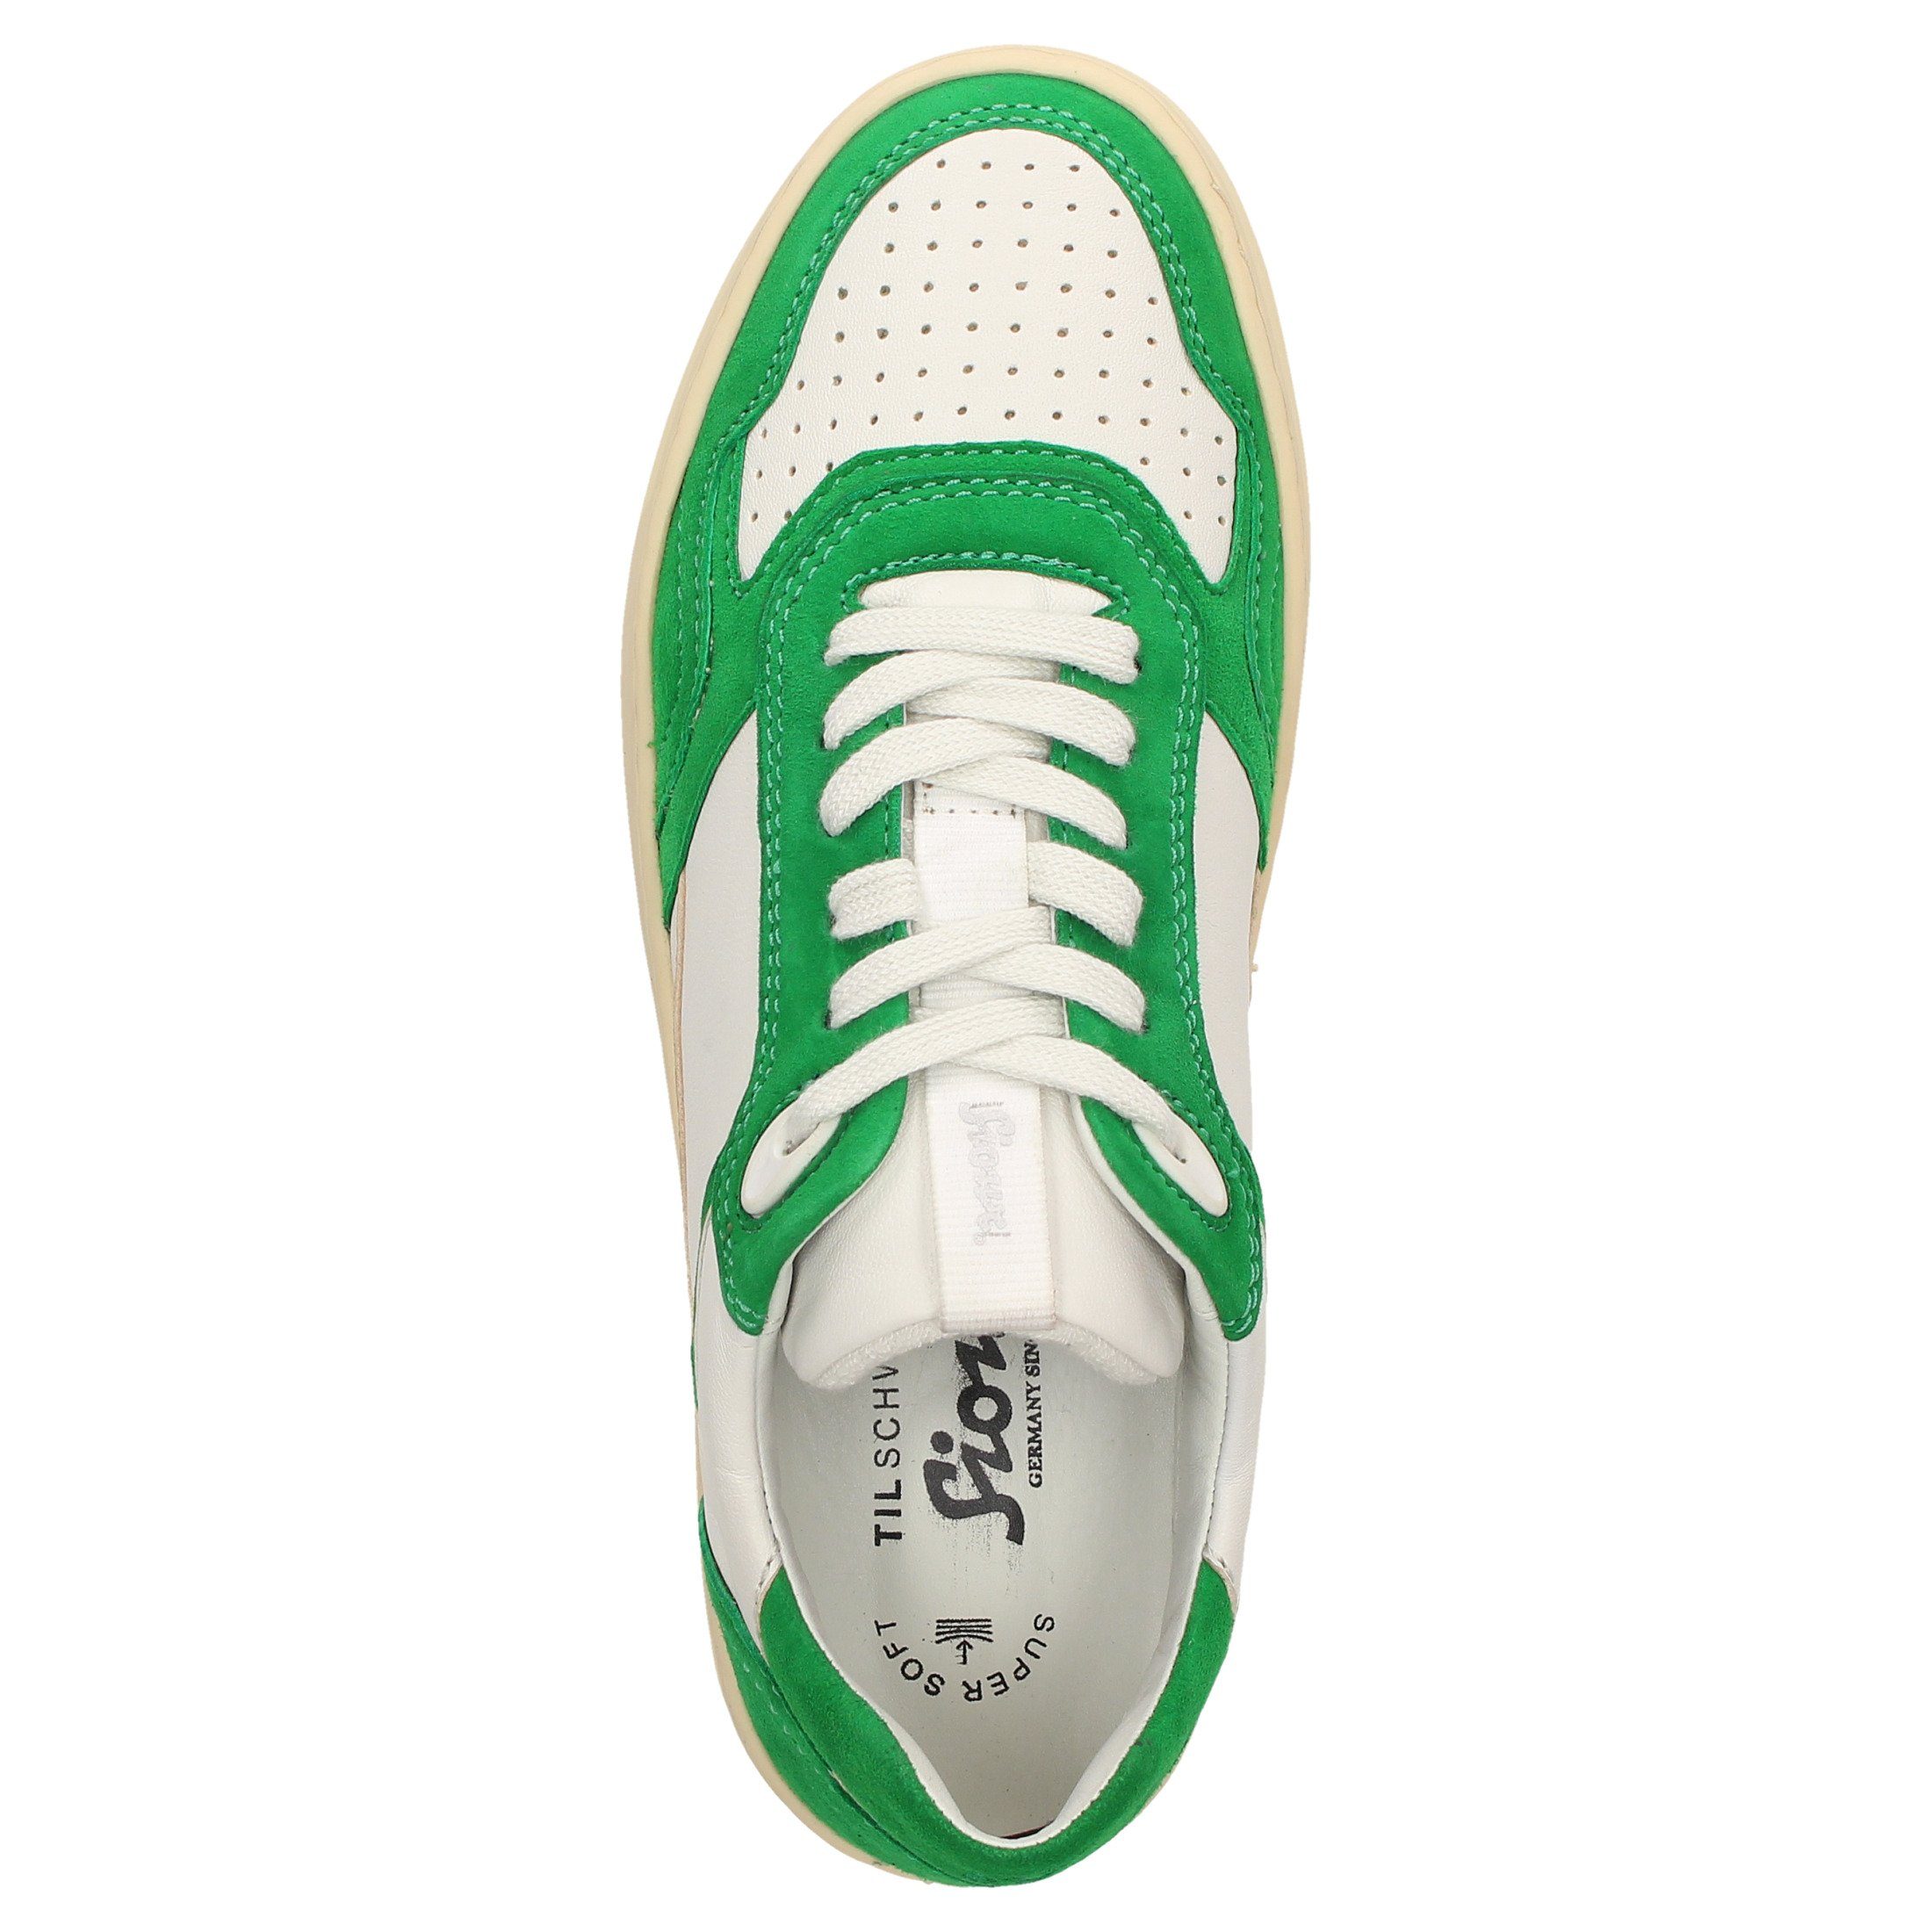 SIOUX Tils sneaker-D Sneaker 008 grün